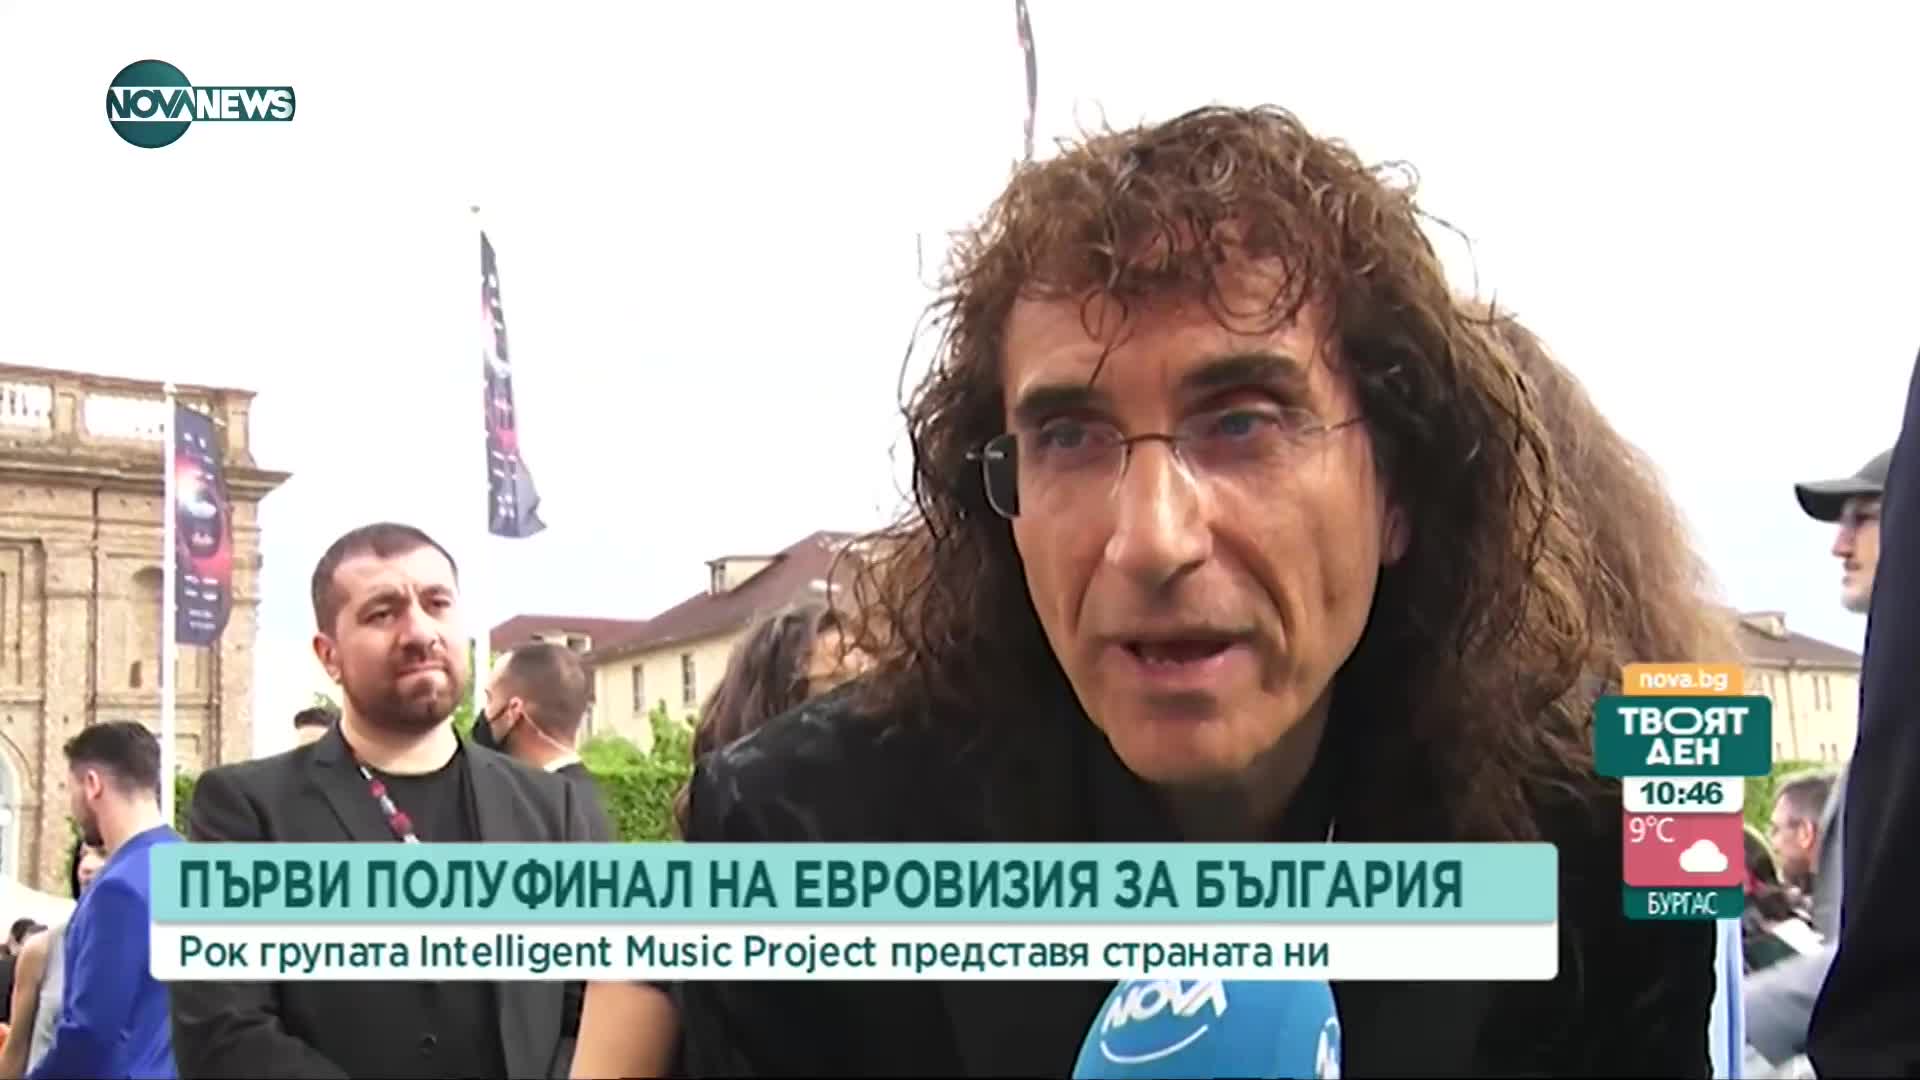 Intelligent Music Project представя България в първия полуфинал на "Евровизия"